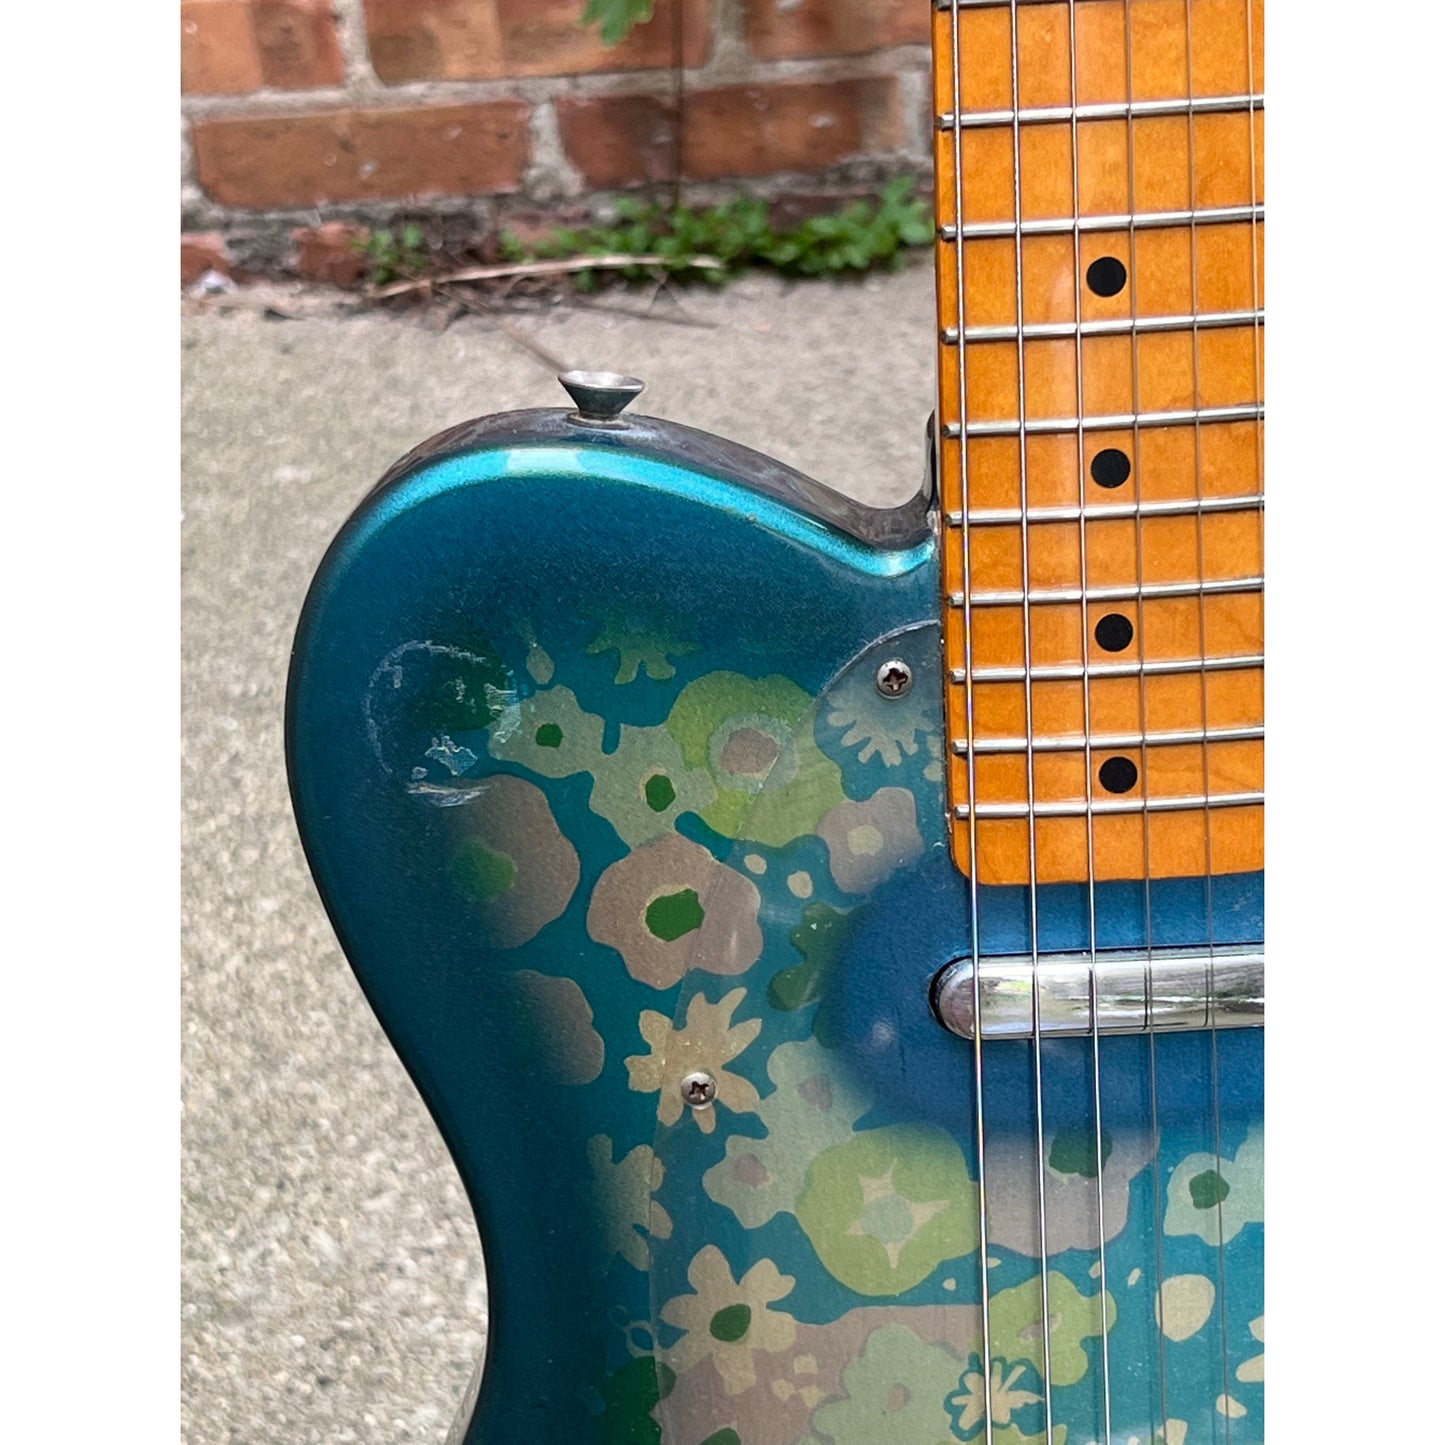 Fender Telecaster Electric Guitar Blue Floral 1985-1986 Japan